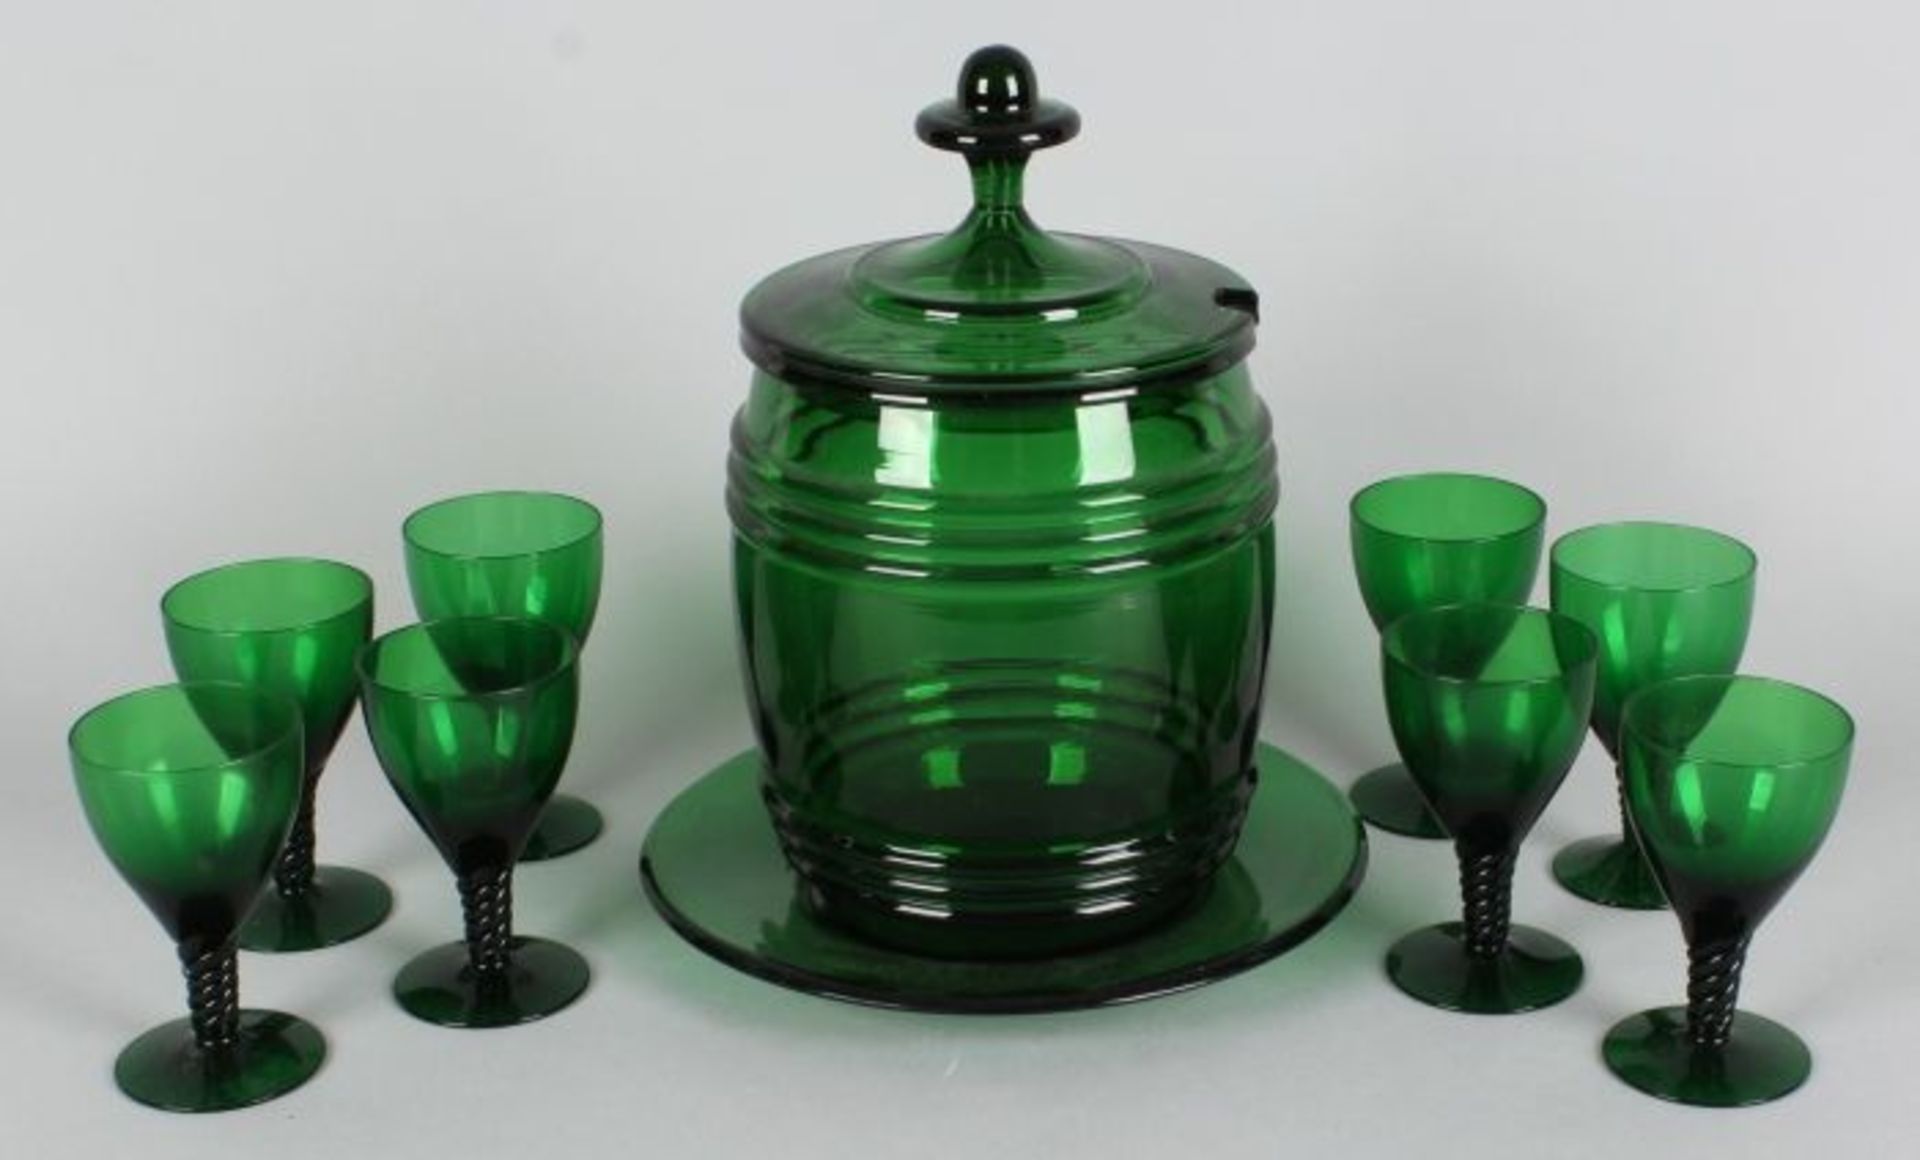 Neunzehnten Jahrhunderts grünes Glas bowlpot einschließlich Skala und 8 grüne Gläser geschlungen